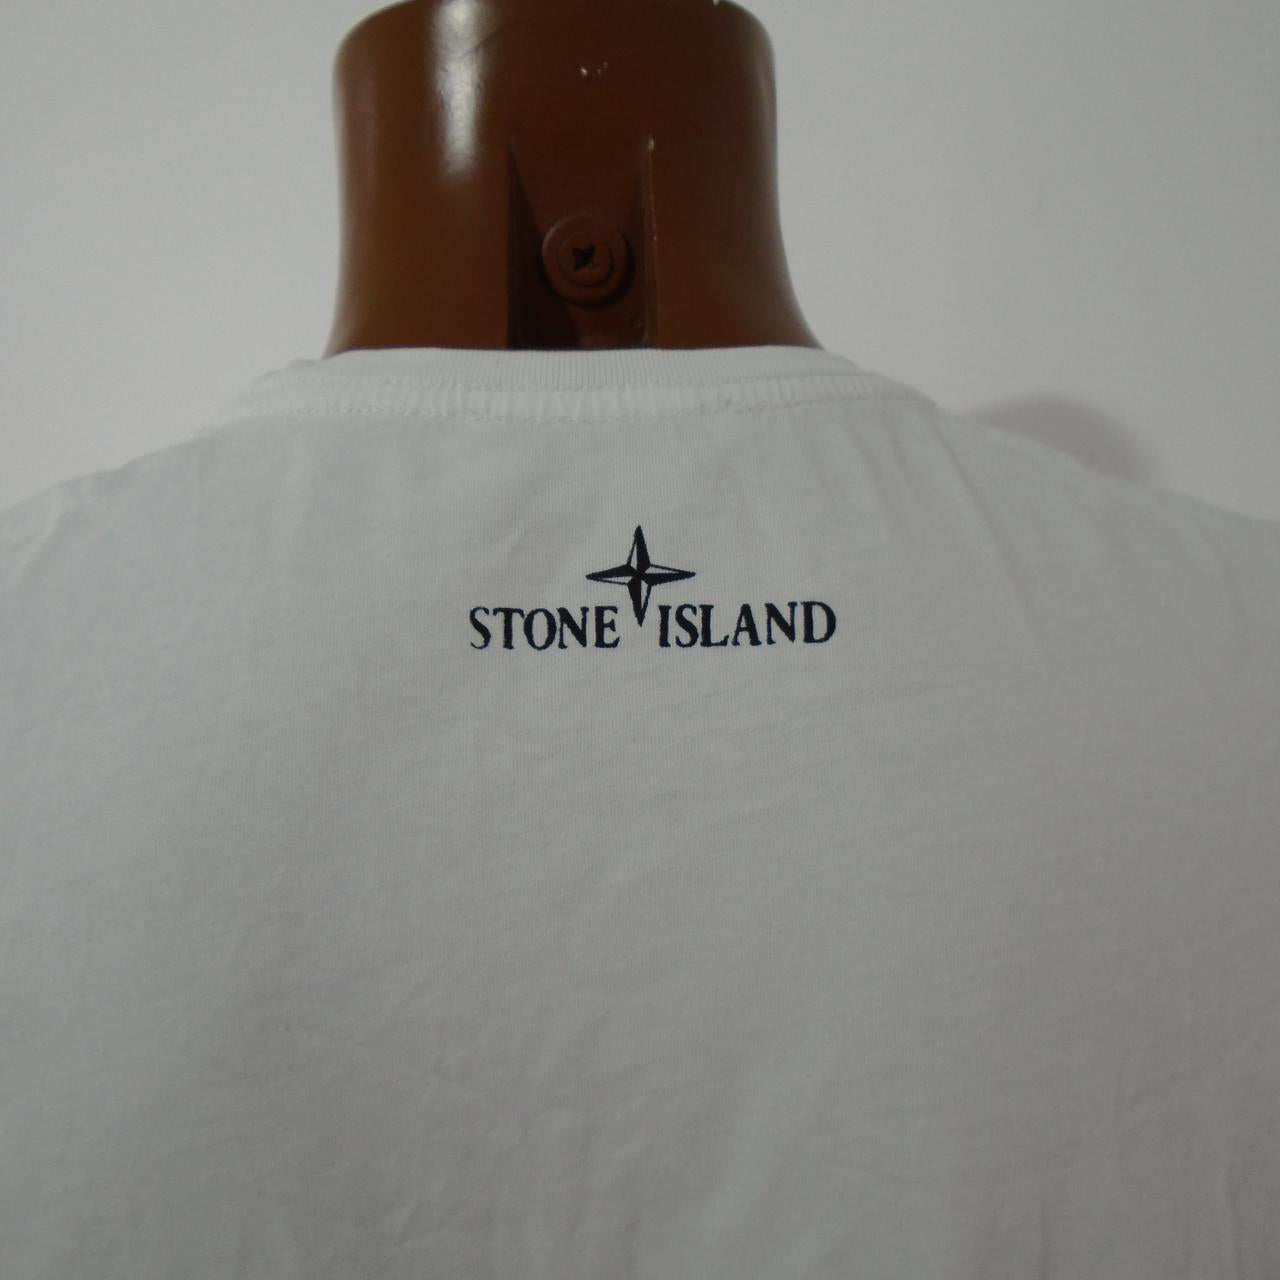 Herren-T-Shirt Stone Island. Weiß. M. Gebraucht. Sehr gut